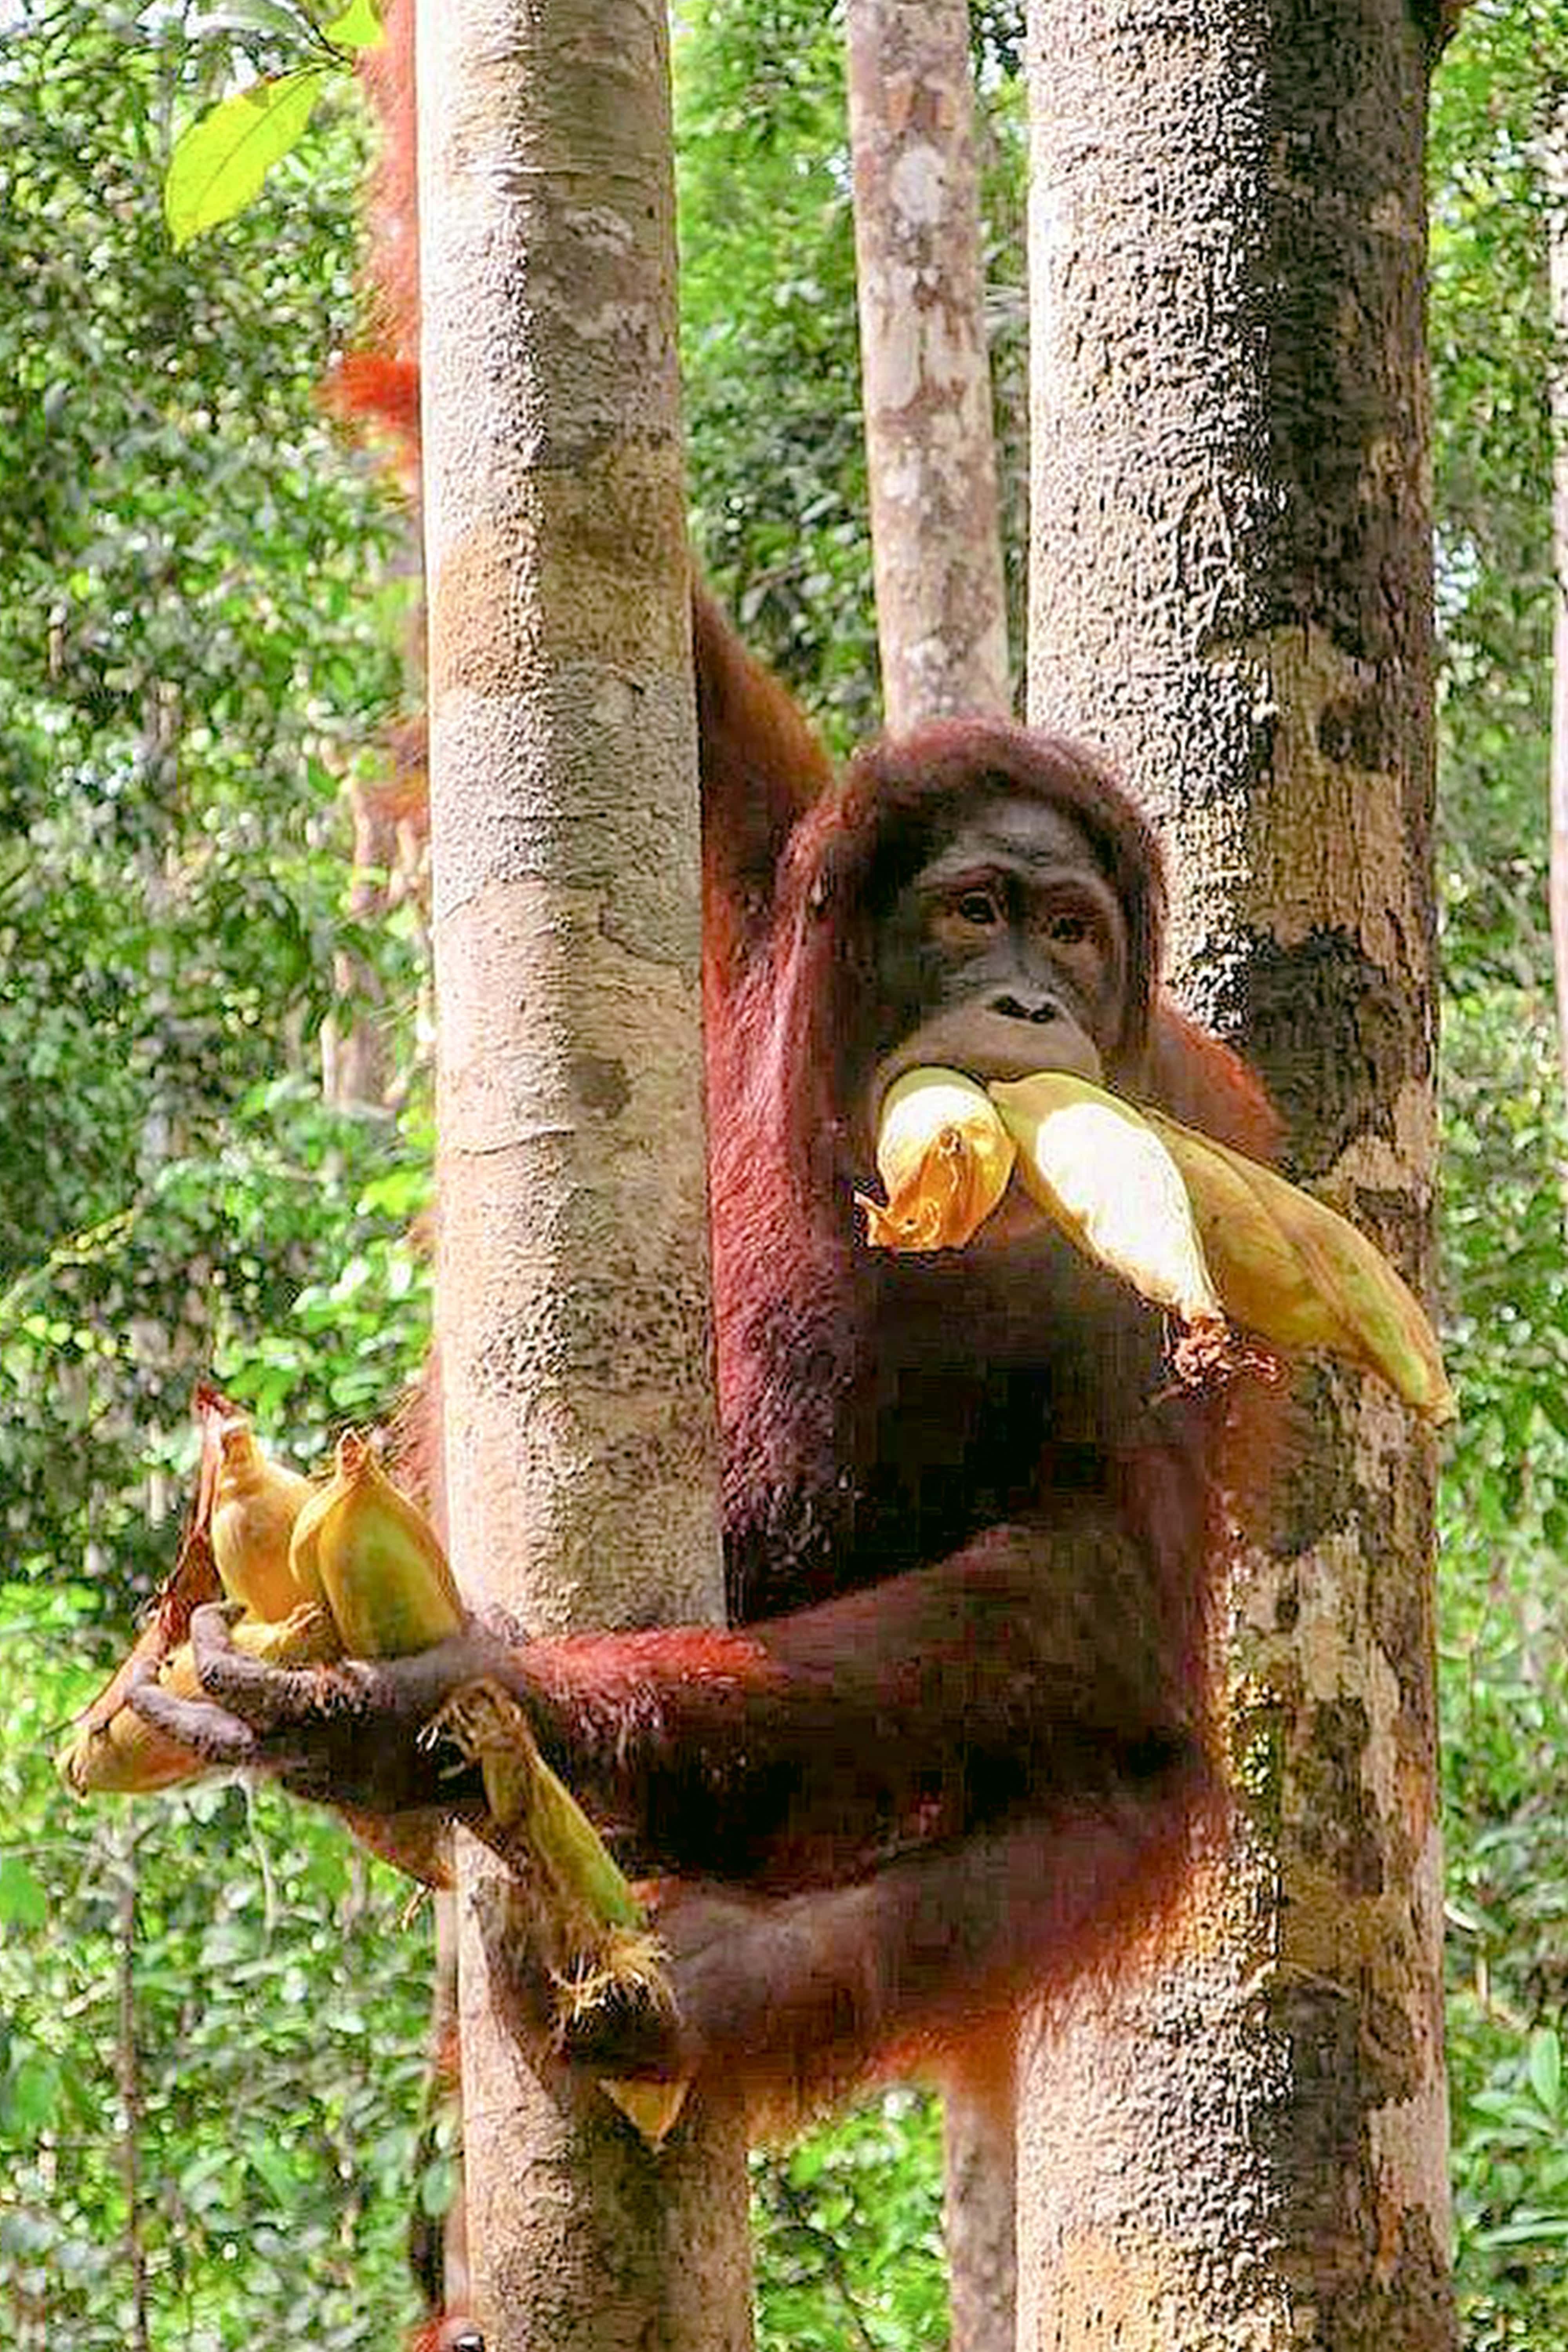 Meet The Wild Borneo Orangutan